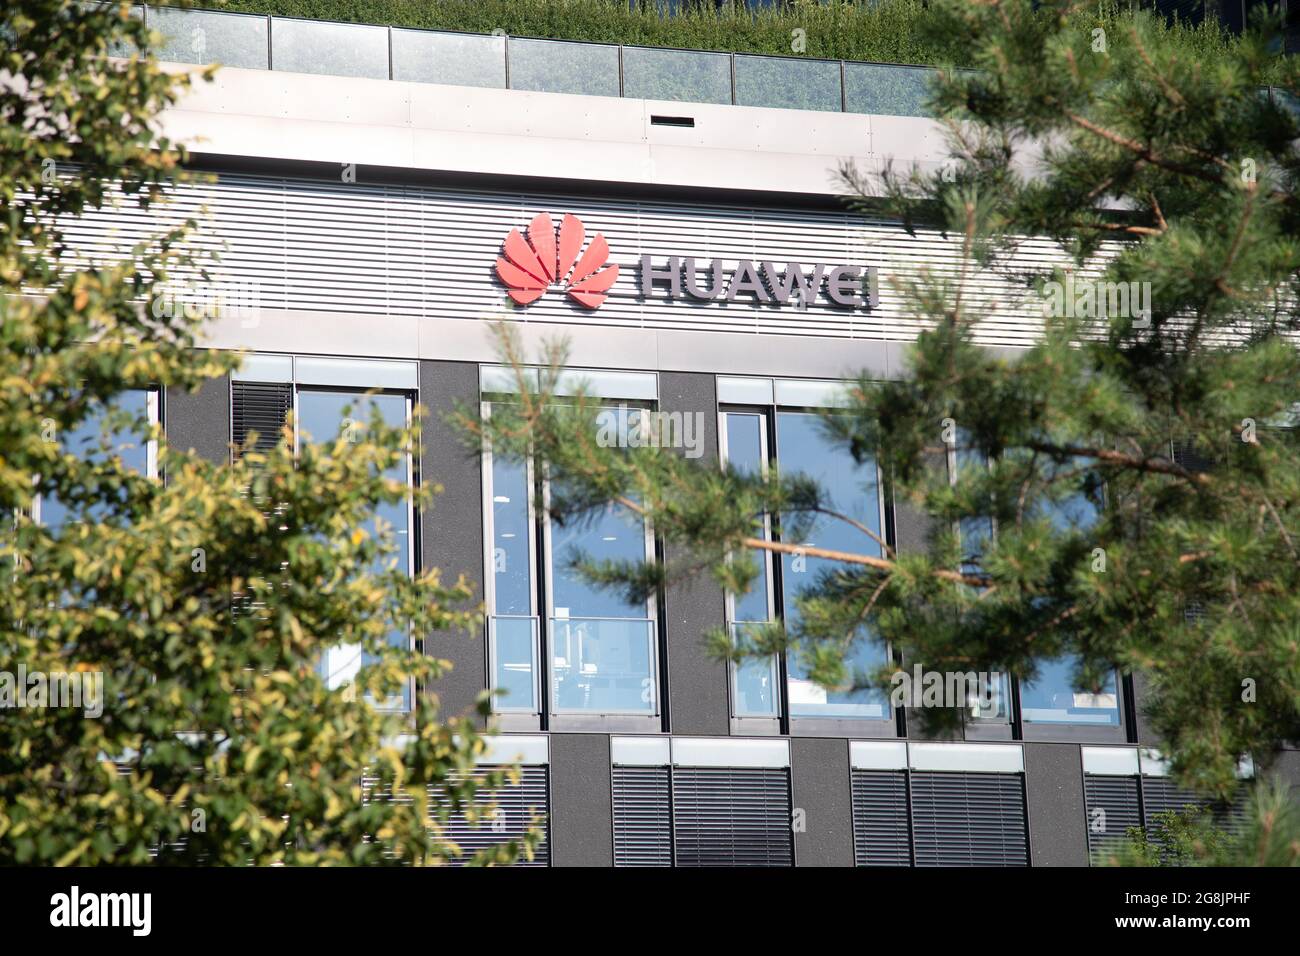 Büros vom größten Smartphone Hersteller der Welt Huawei Technologies Co. Ltd. in München. Huawei steht wegen der Nähe zum chinesischen Staat und der Partei in der Kritik.  --  Bureaus of Huawei seen in Munich. (Photo by Alexander Pohl/Sipa USA) Stock Photo